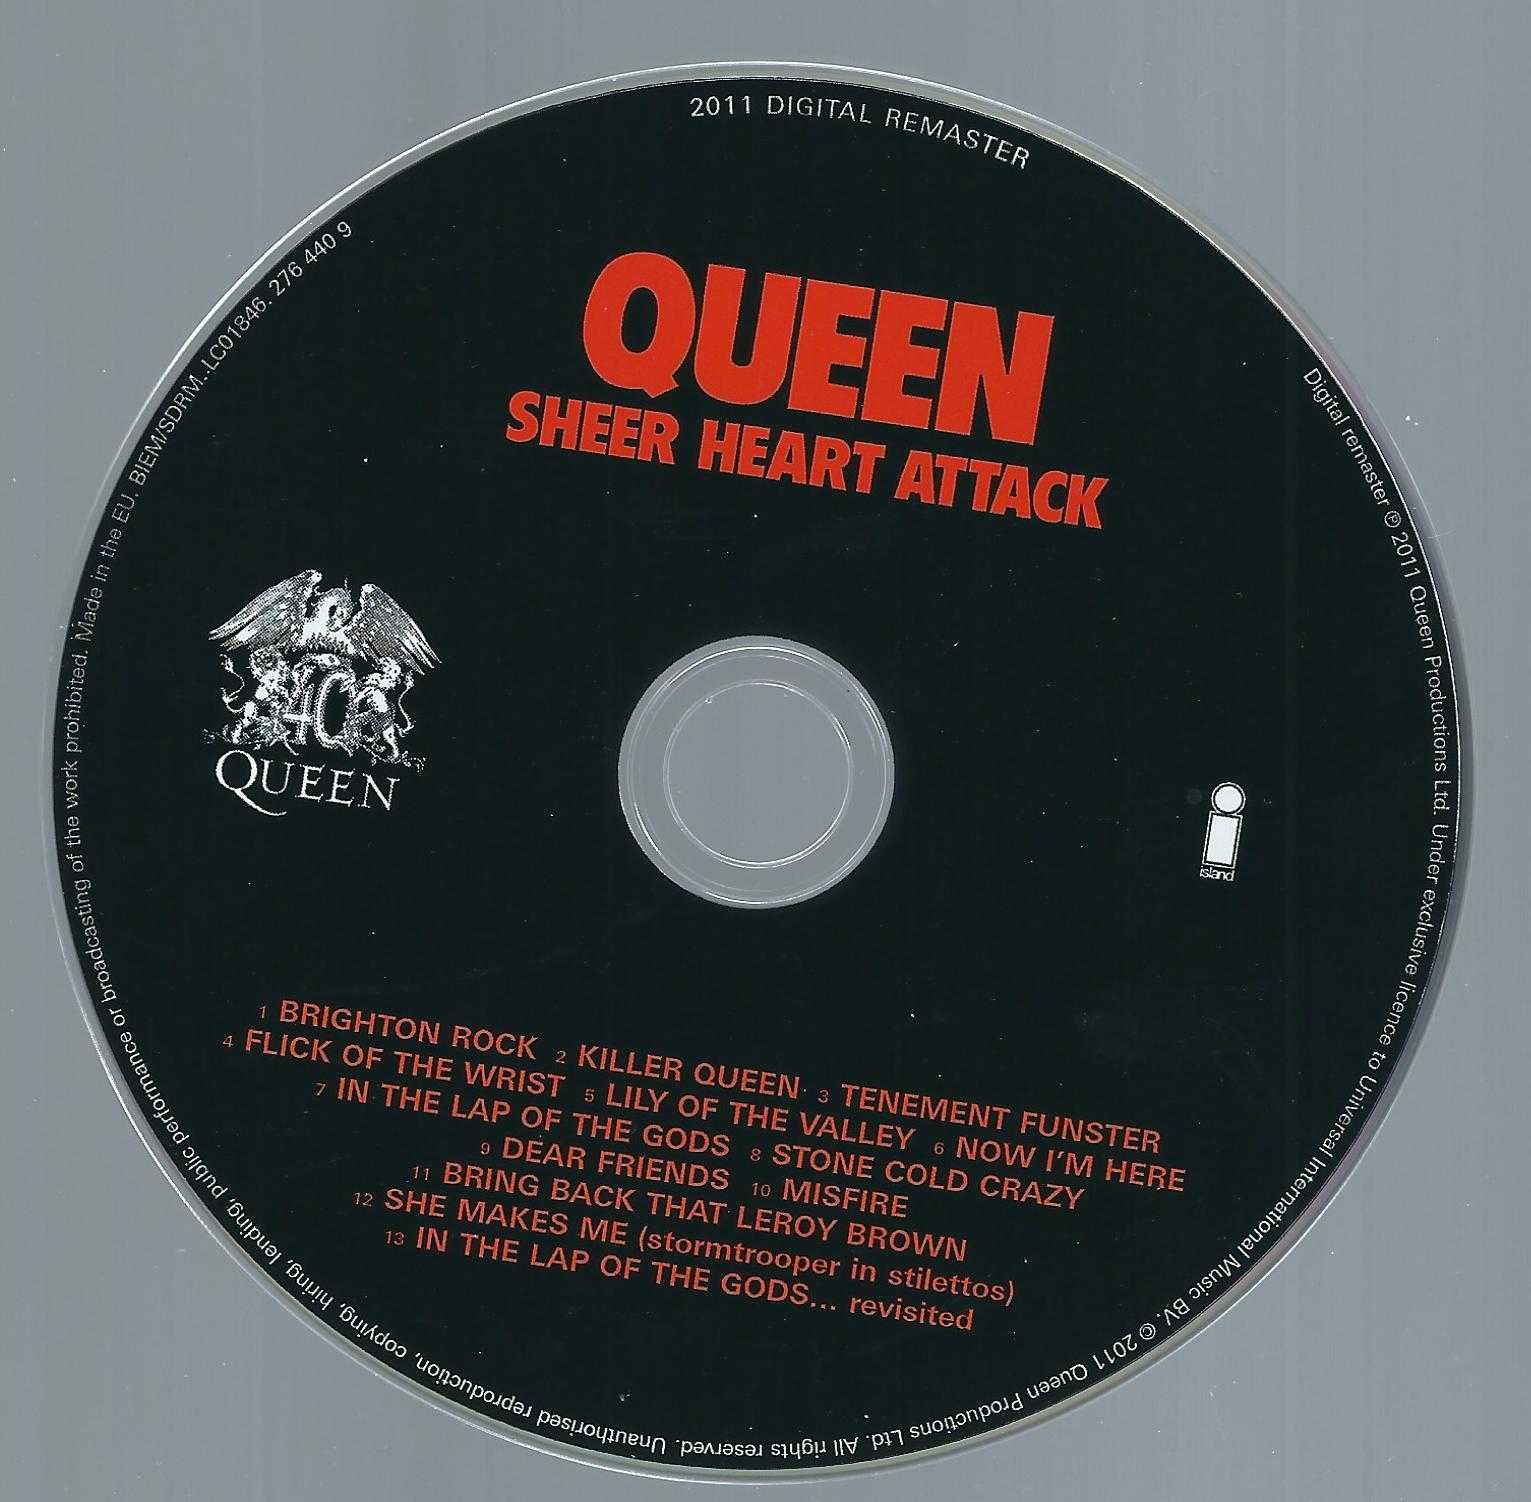 CD Queen - Sheer Heart Attack (2011) (Virgin)